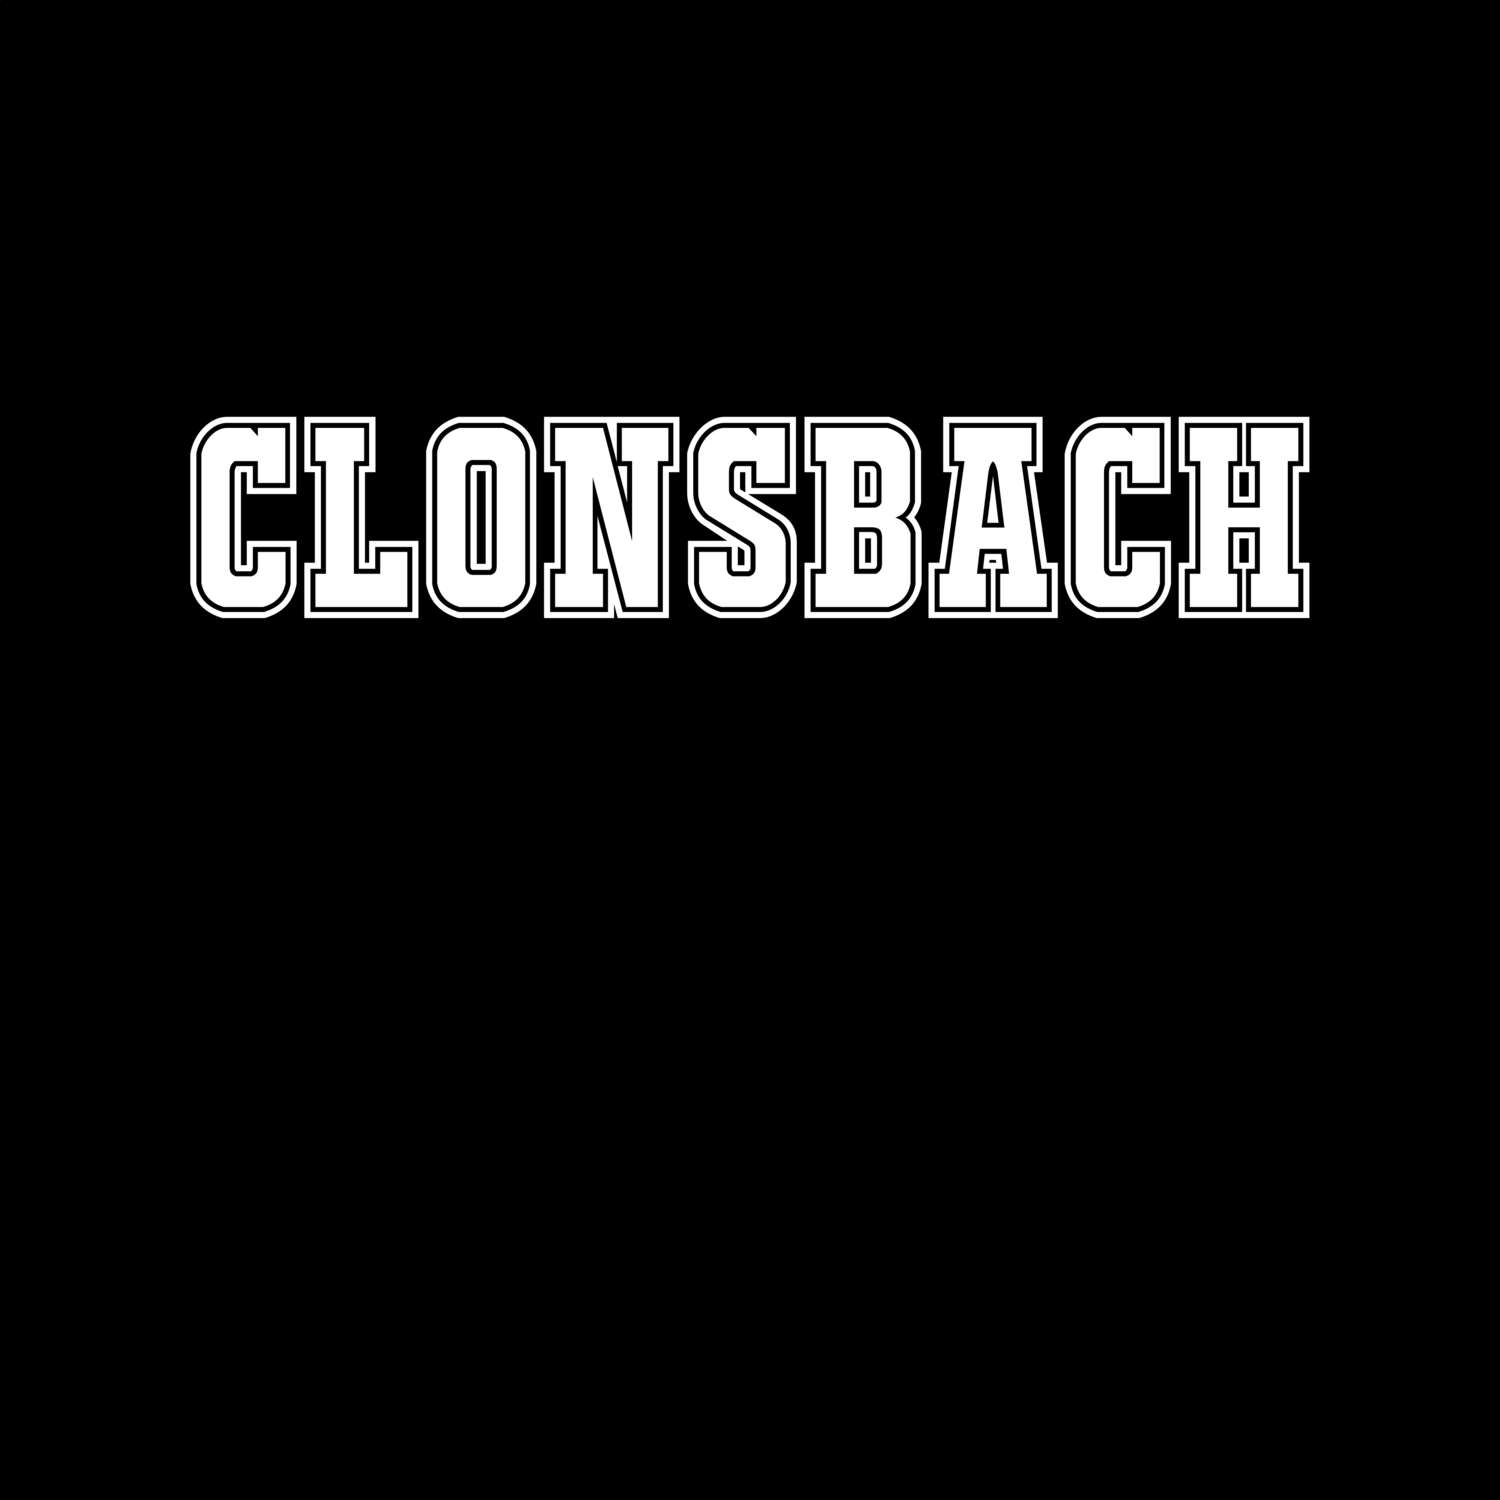 Clonsbach T-Shirt »Classic«